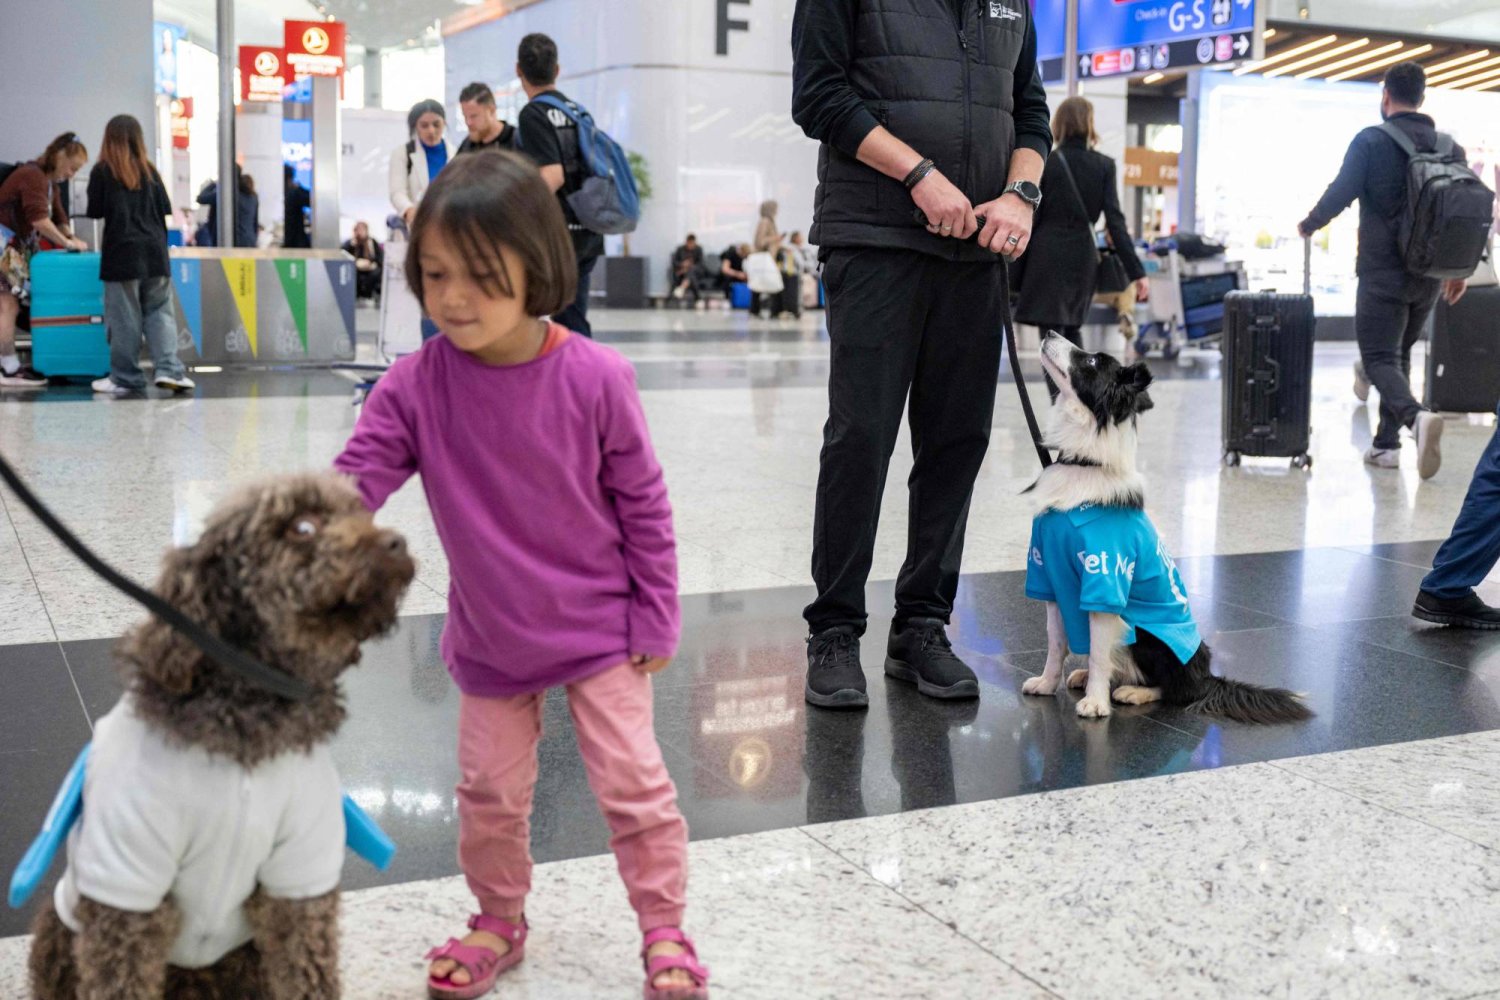 يتولى الكلبان مهمة استقبال المسافرين القلقين والمتعبين الواصلين إلى مطار إسطنبول (أ.ف.ب)